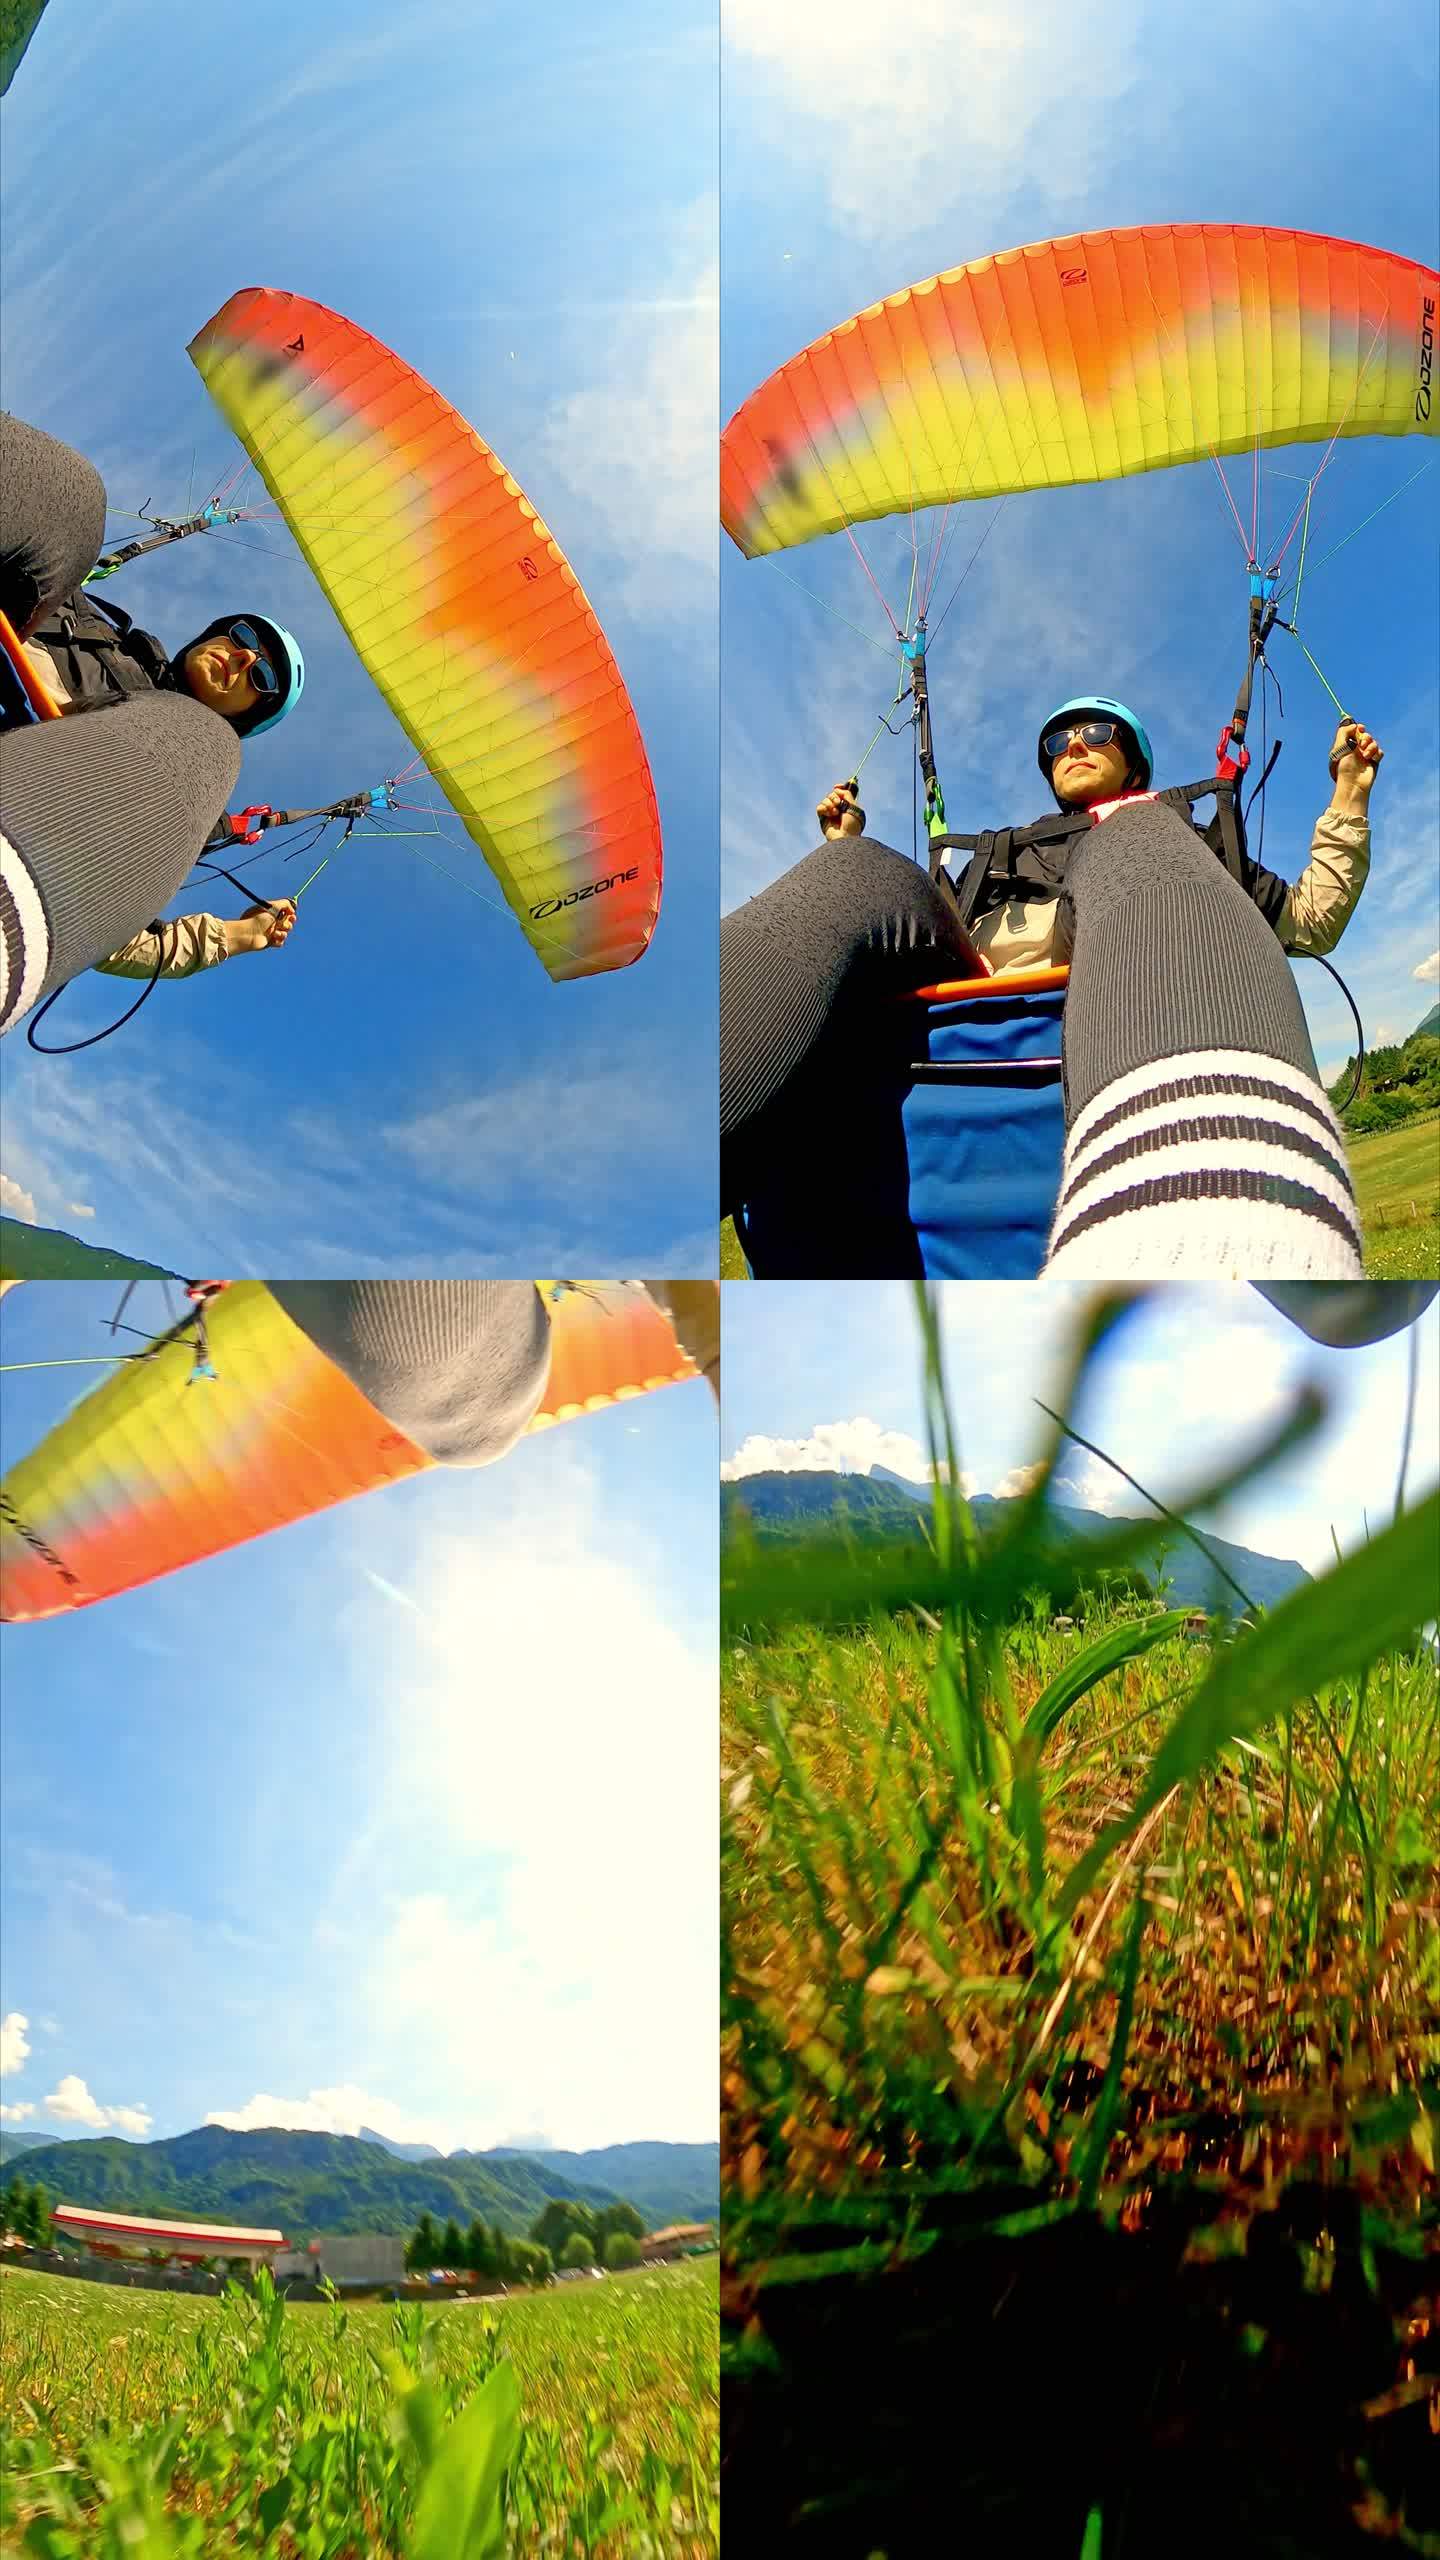 滑翔伞滑向着陆滑翔飞行城市上空极限运动